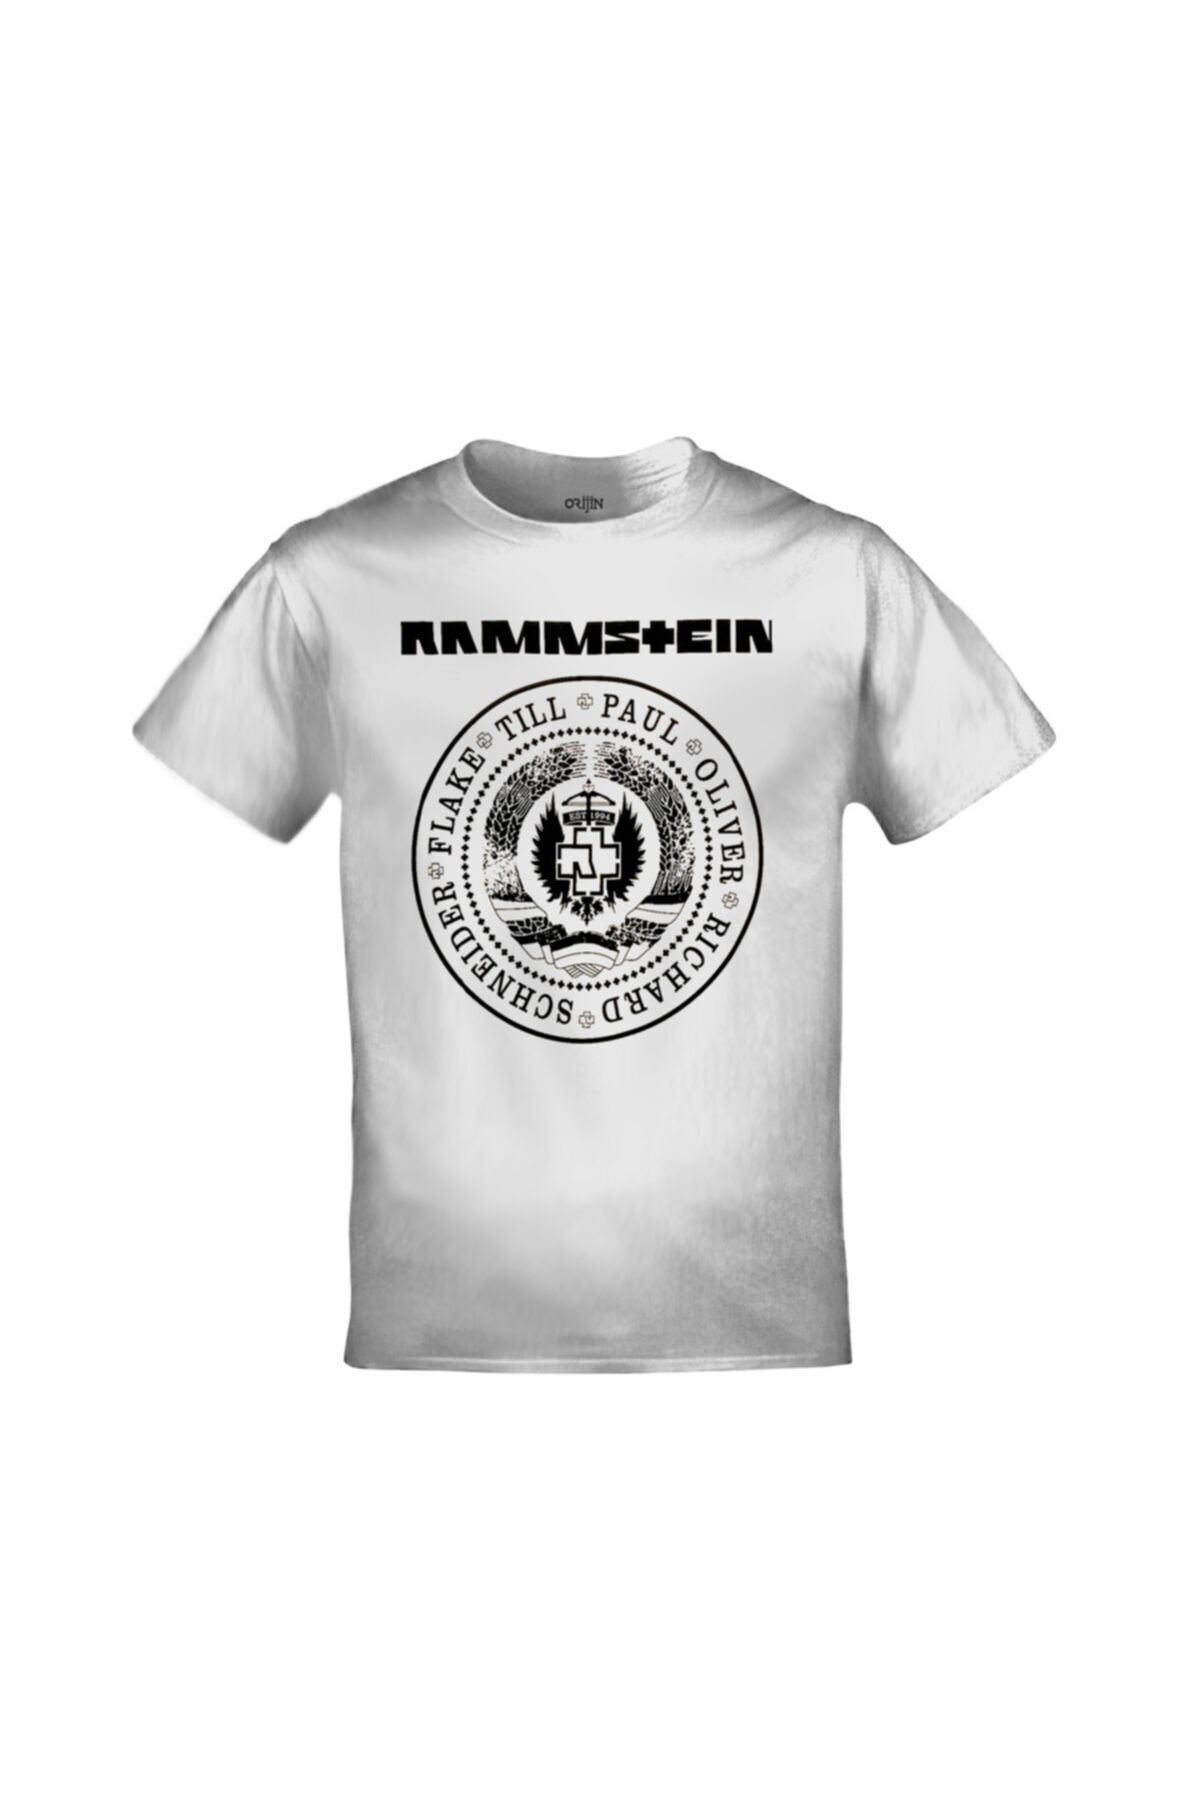 Orijin Tekstil Rammstein Baskılı Unisex Beyaz Tshirt